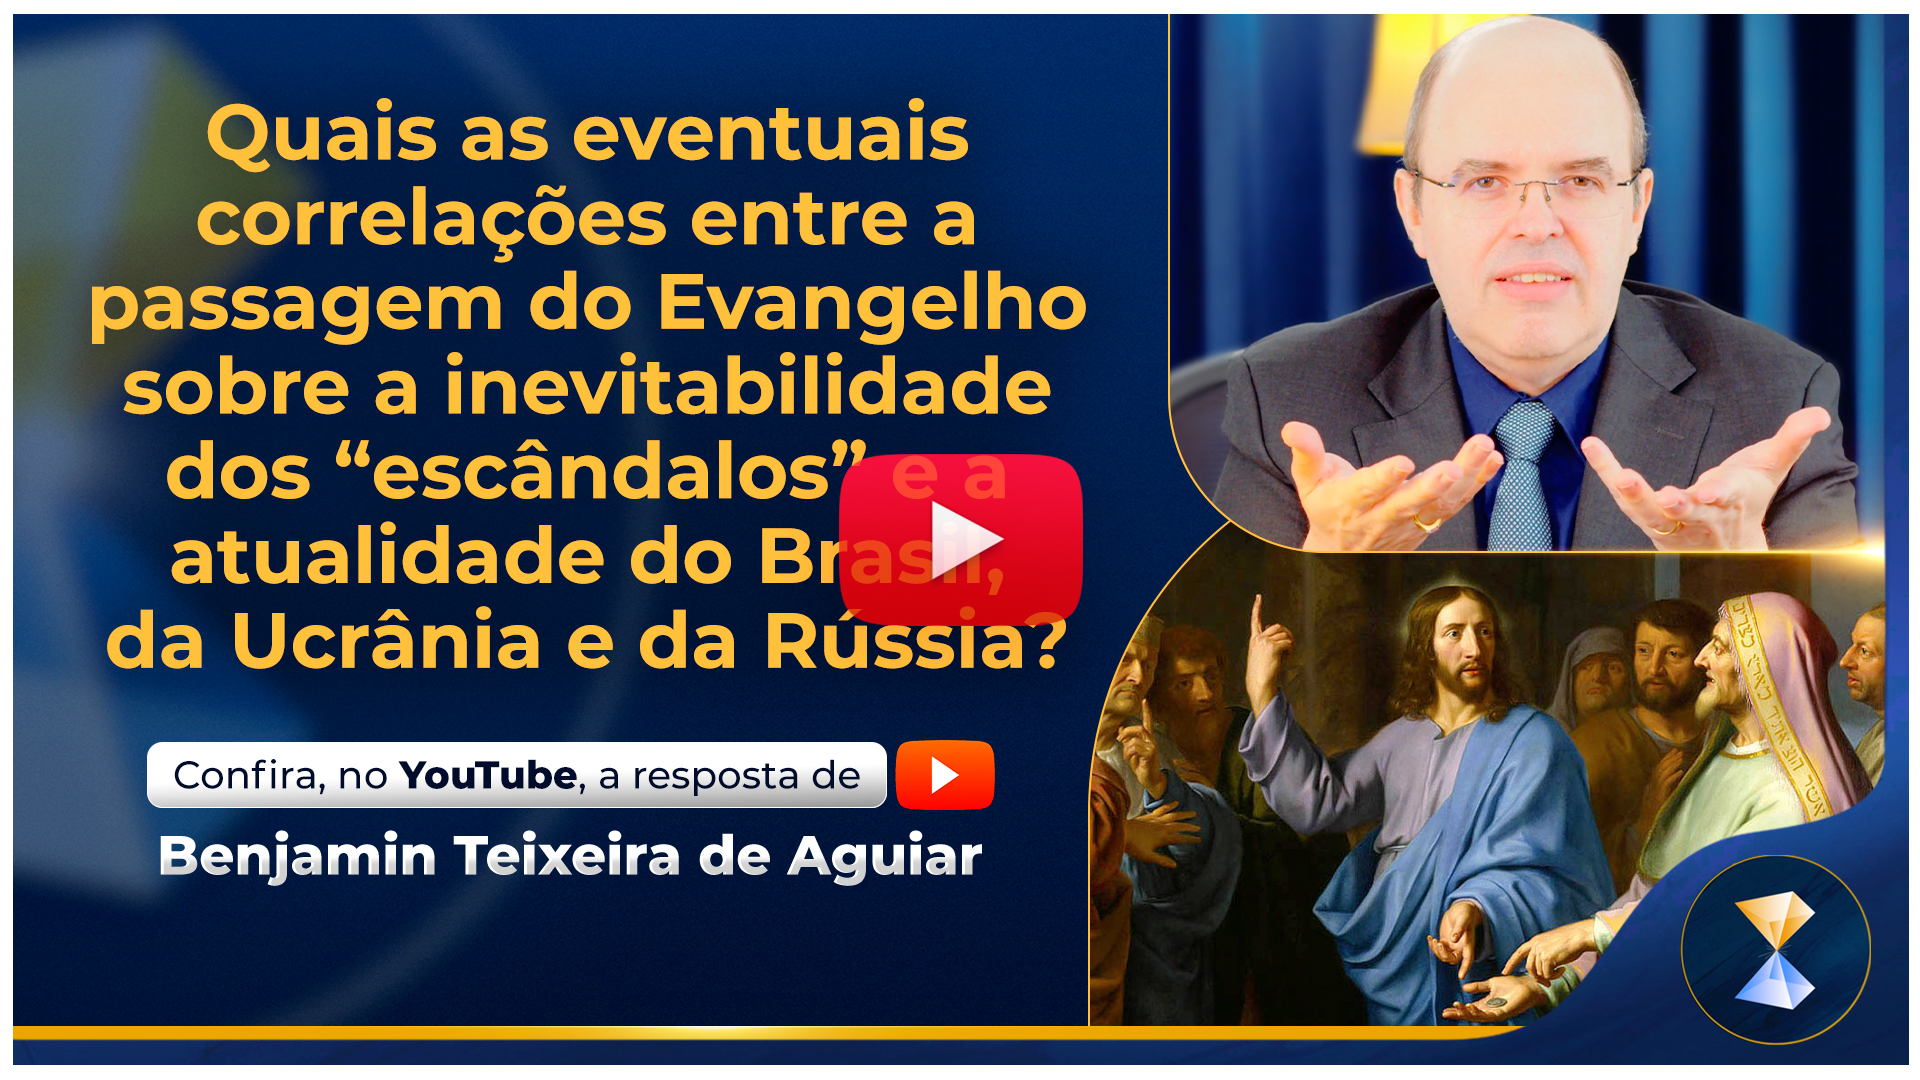 Quais as eventuais correlações entre a passagem do Evangelho sobre a inevitabilidade dos "escândalos" e a atualidade do Brasil, da Ucrânia e da Rússia?